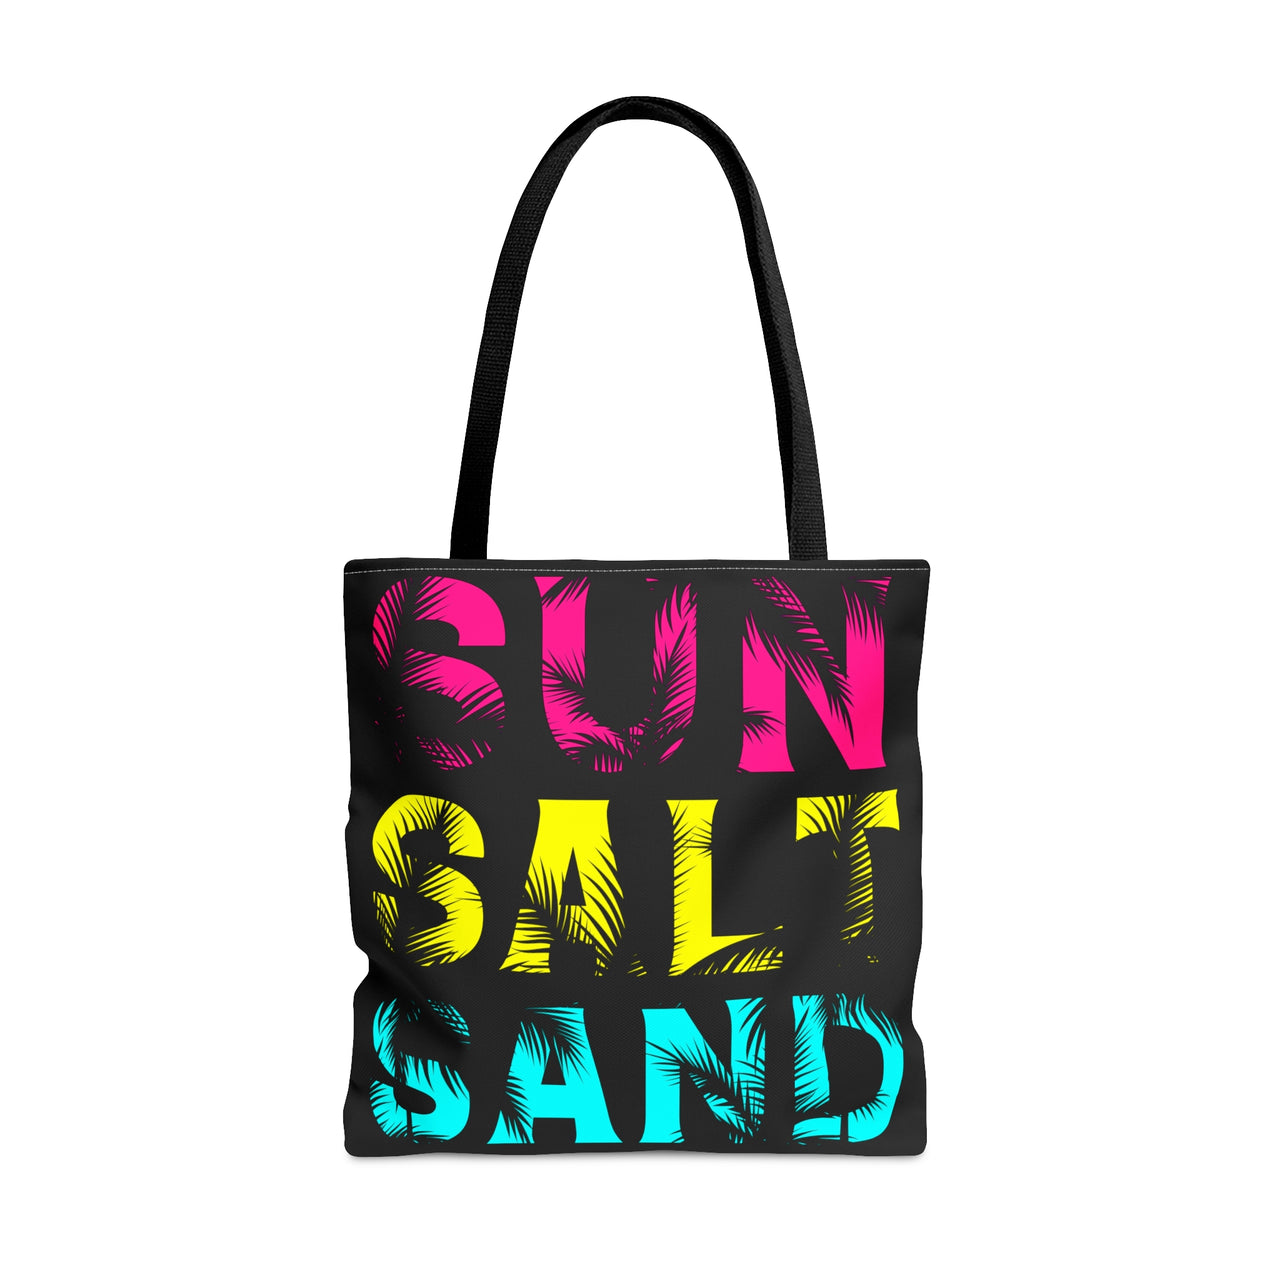 Sun Salt Sand Tote Bag